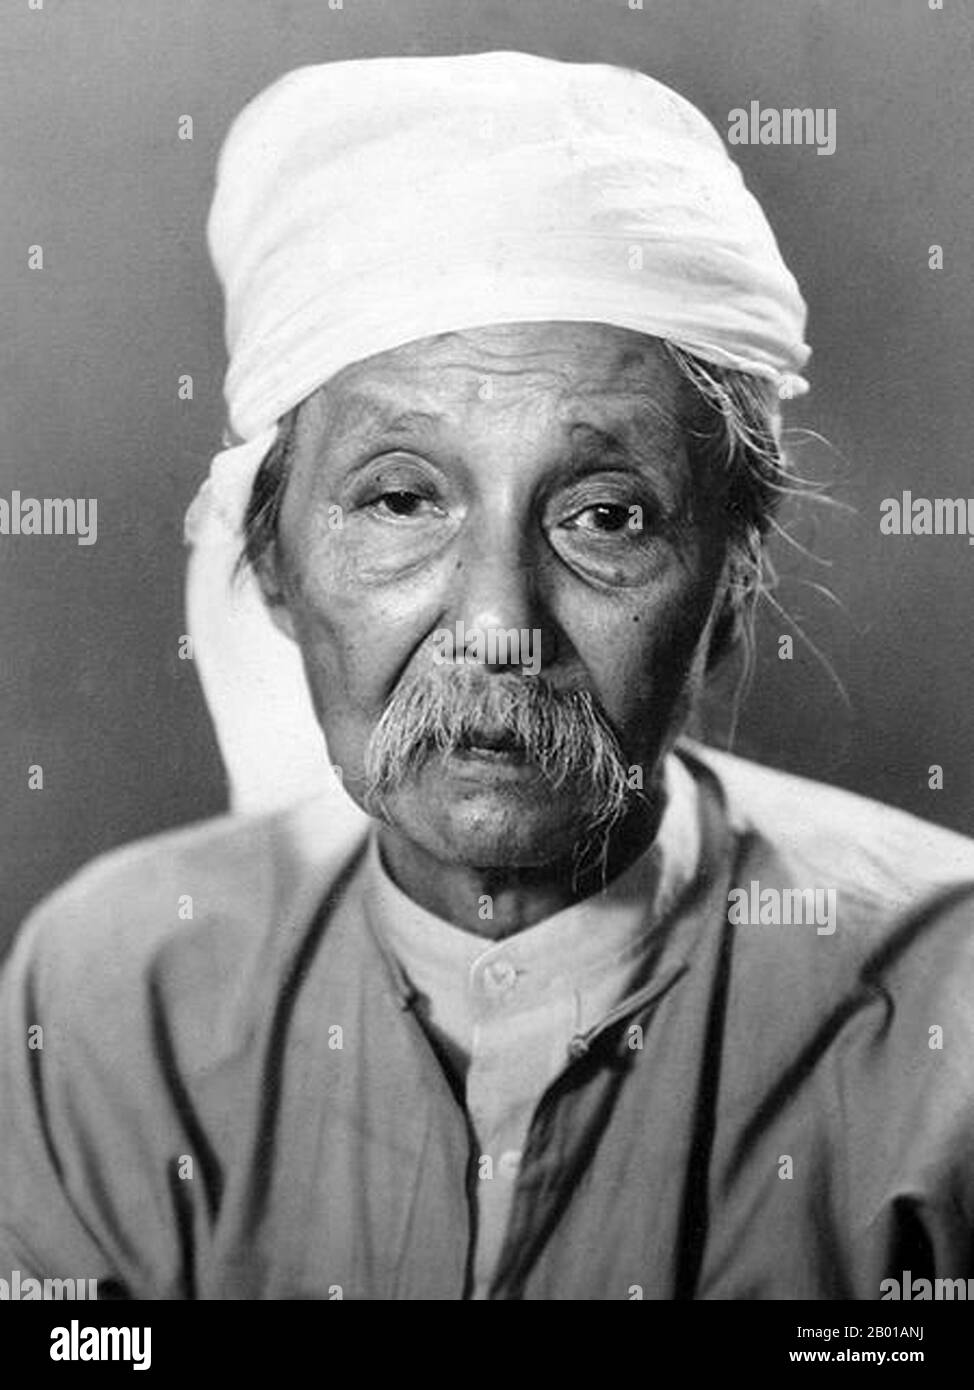 Birma/Myanmar: Thakin Kodaw Hmaing, burmesische Dichterin, Schriftstellerin, Politikerin und Nationalistin (23. März 1876 - 23. Juli 1964), c. 1958. Thakin Kodaw Hmaing gilt als einer der größten burmesischen Dichter, Schriftsteller und politischen Führer des Burmas des 20.. Jahrhunderts. Er gilt als Vater der birmanischen Nationalisten- und Friedensbewegungen sowie als literarisches Genie. Sein Vermächtnis und sein Einfluss auf die Nachkriegsgenerationen sind sowohl in der Literatur als auch in der aktuellen politischen Situation in Myanmar (Burma) zu spüren. Stockfoto